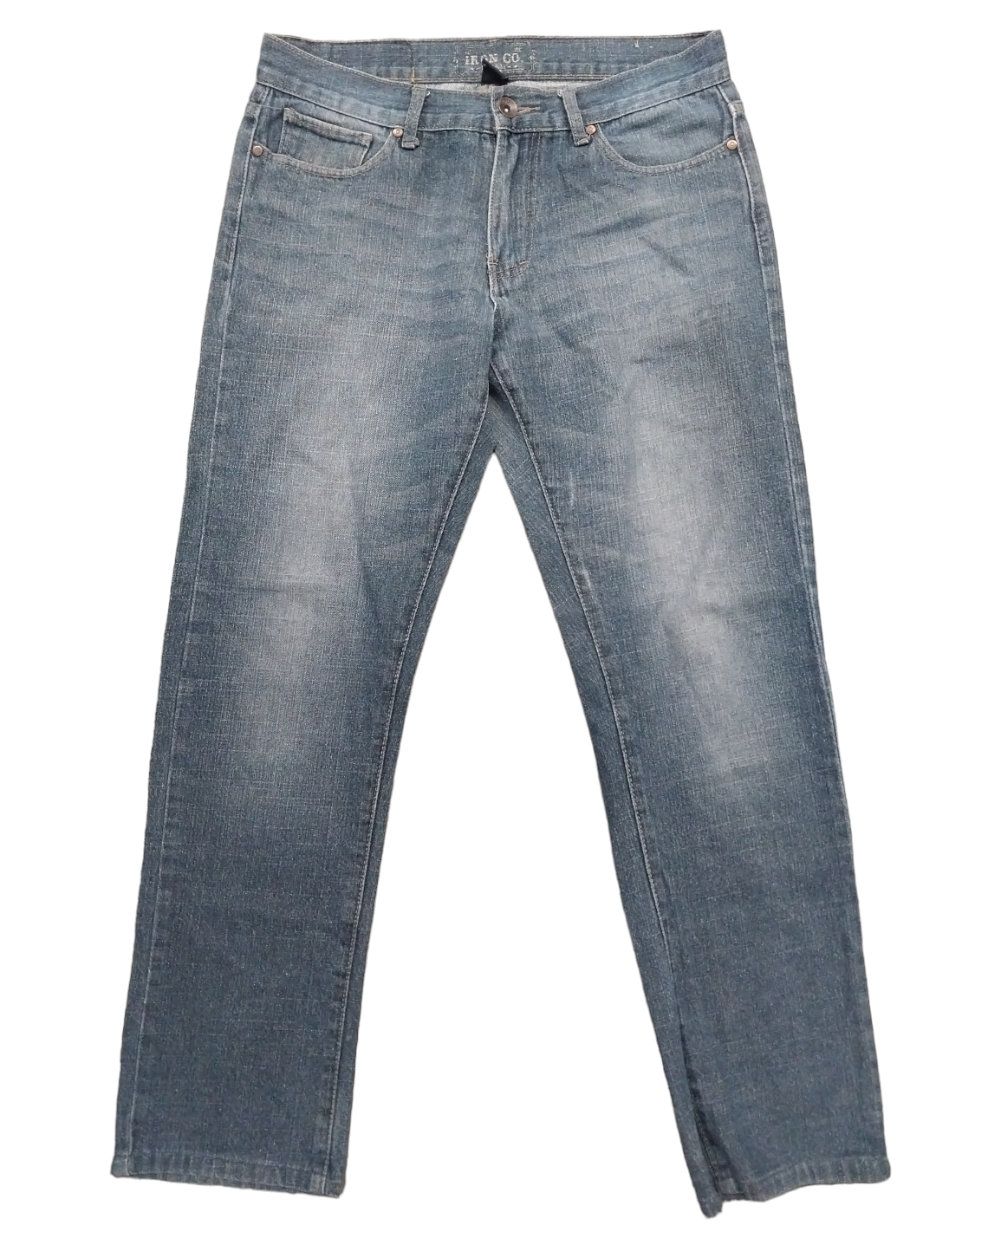 Pantalón Nuevo, Marca HOLLISTER, Talla 34×32, Medidas: 44 cm de